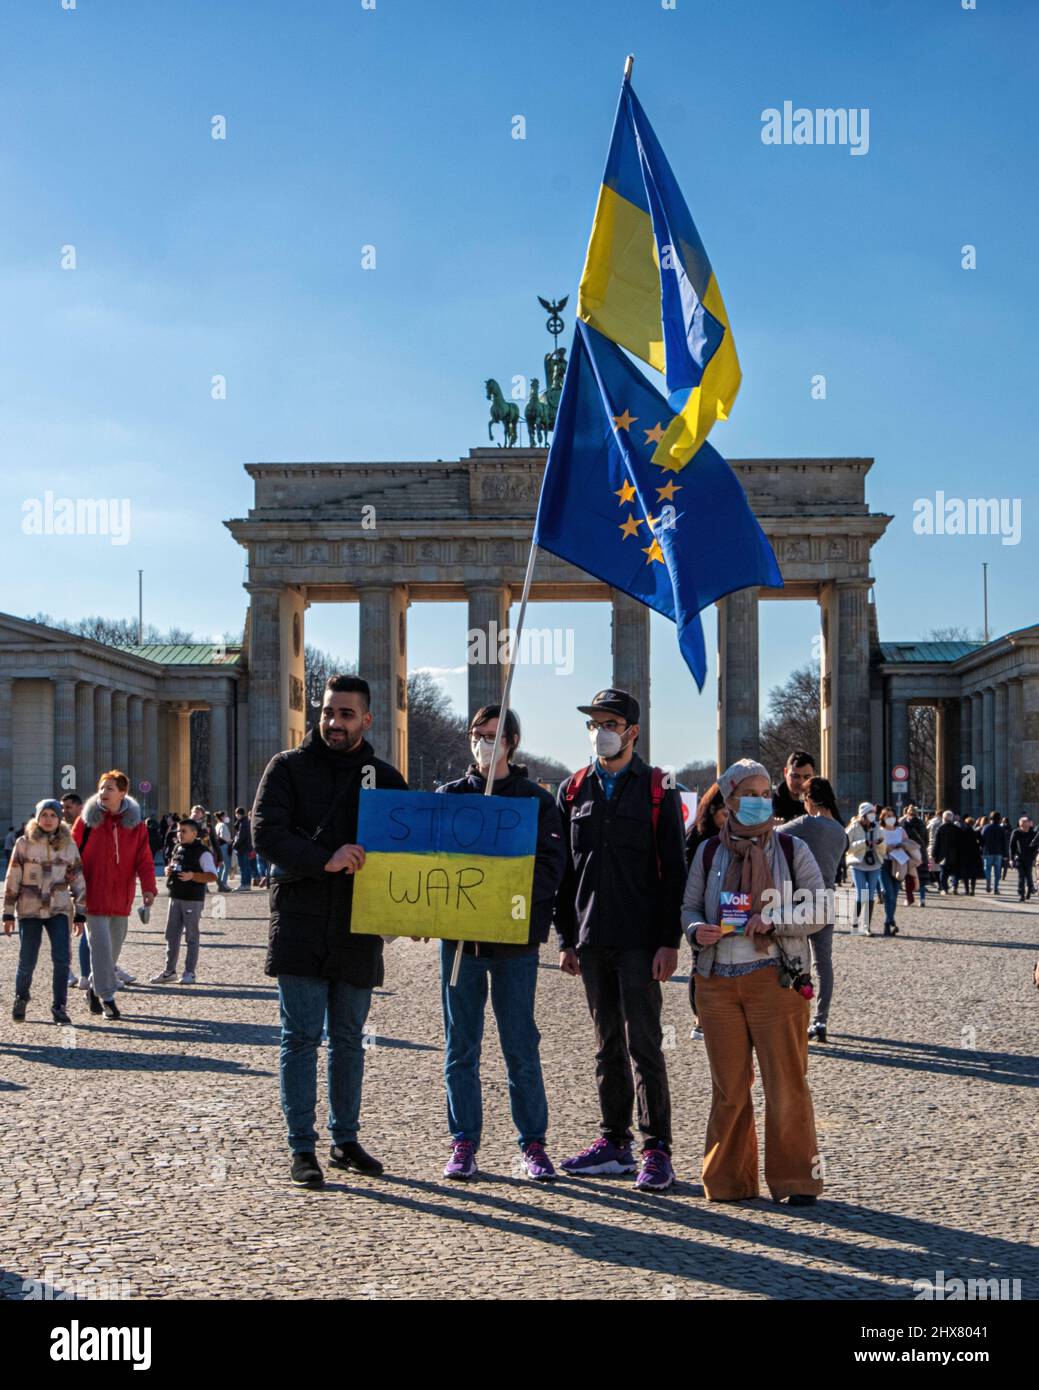 Demonstranten zeigen Solidarität mit der Ukraine als Reaktion auf die russische Militäroffensive. Brandenburger Tor, Berlin, Deutschland, Plakat „Stop war“ Stockfoto